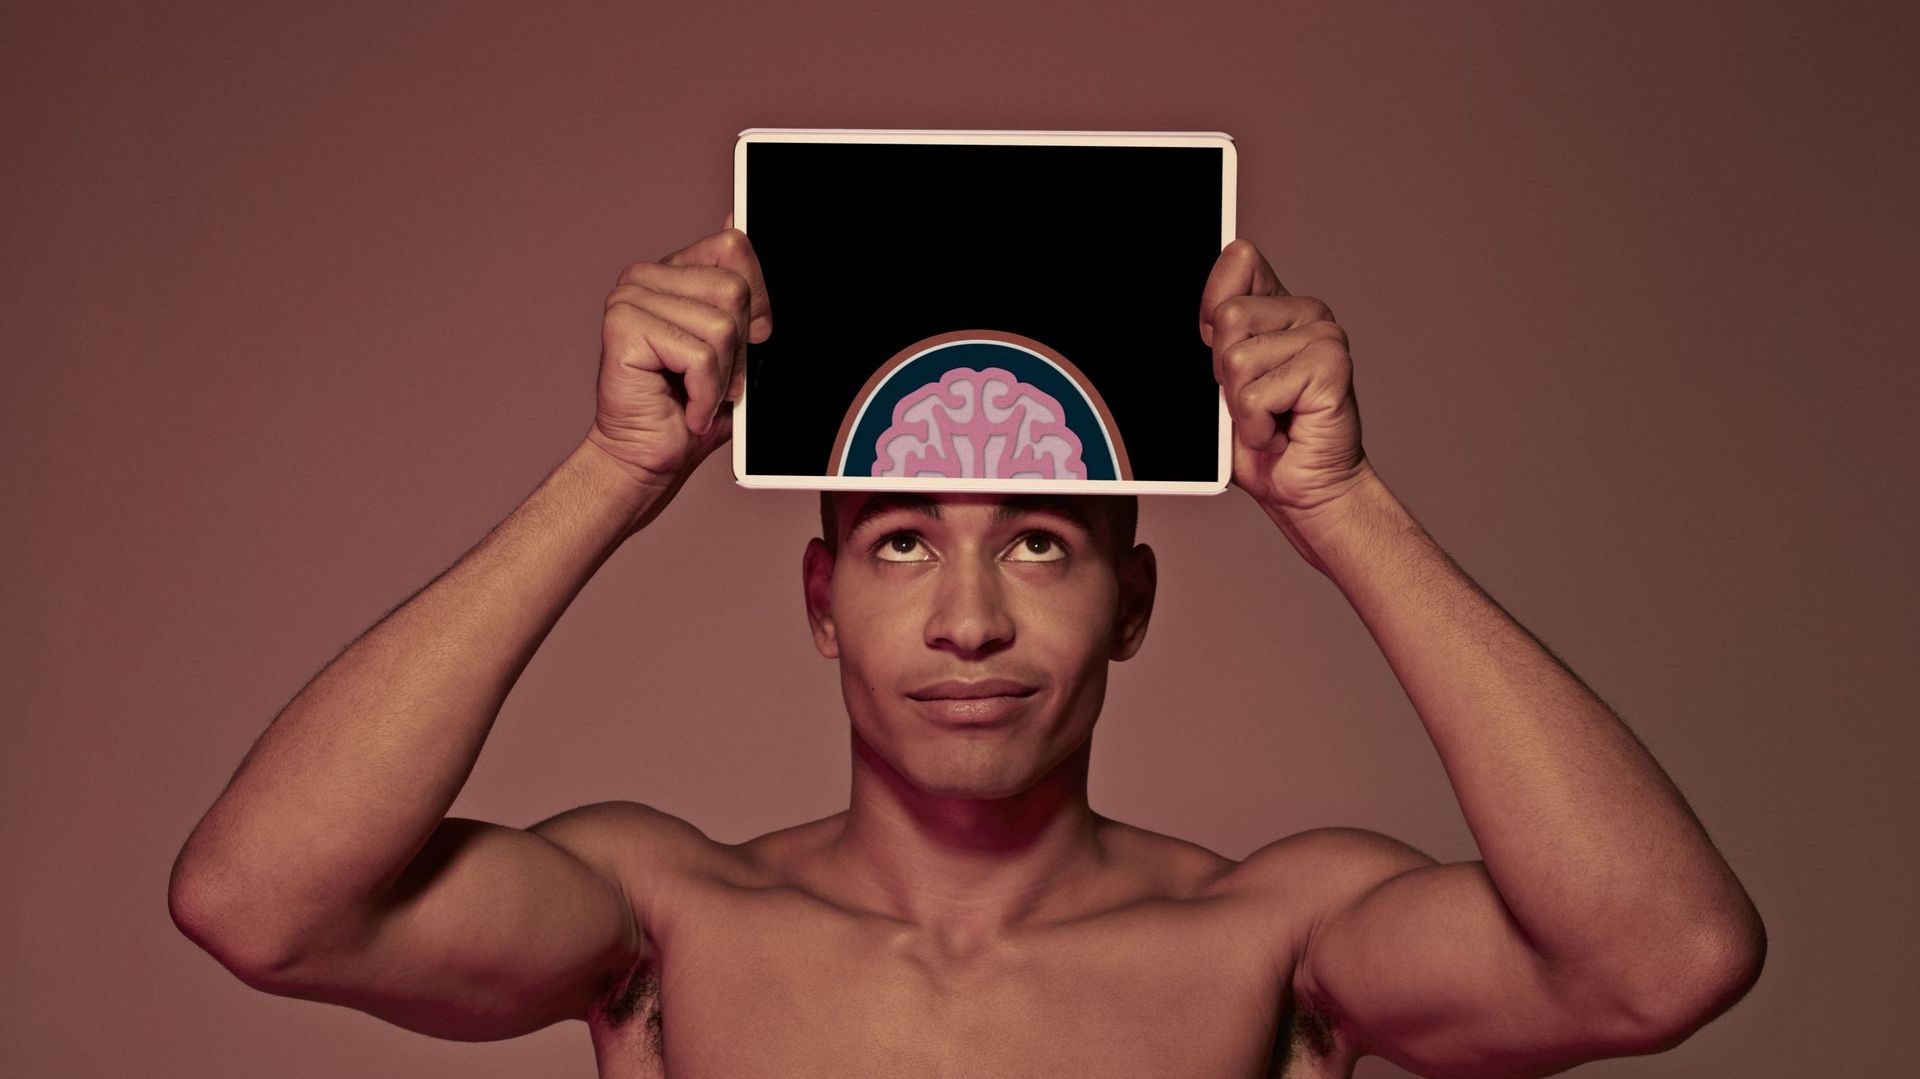 Imagerie mentale : et si penser positivement vous aidait à vous sentir mieux ?